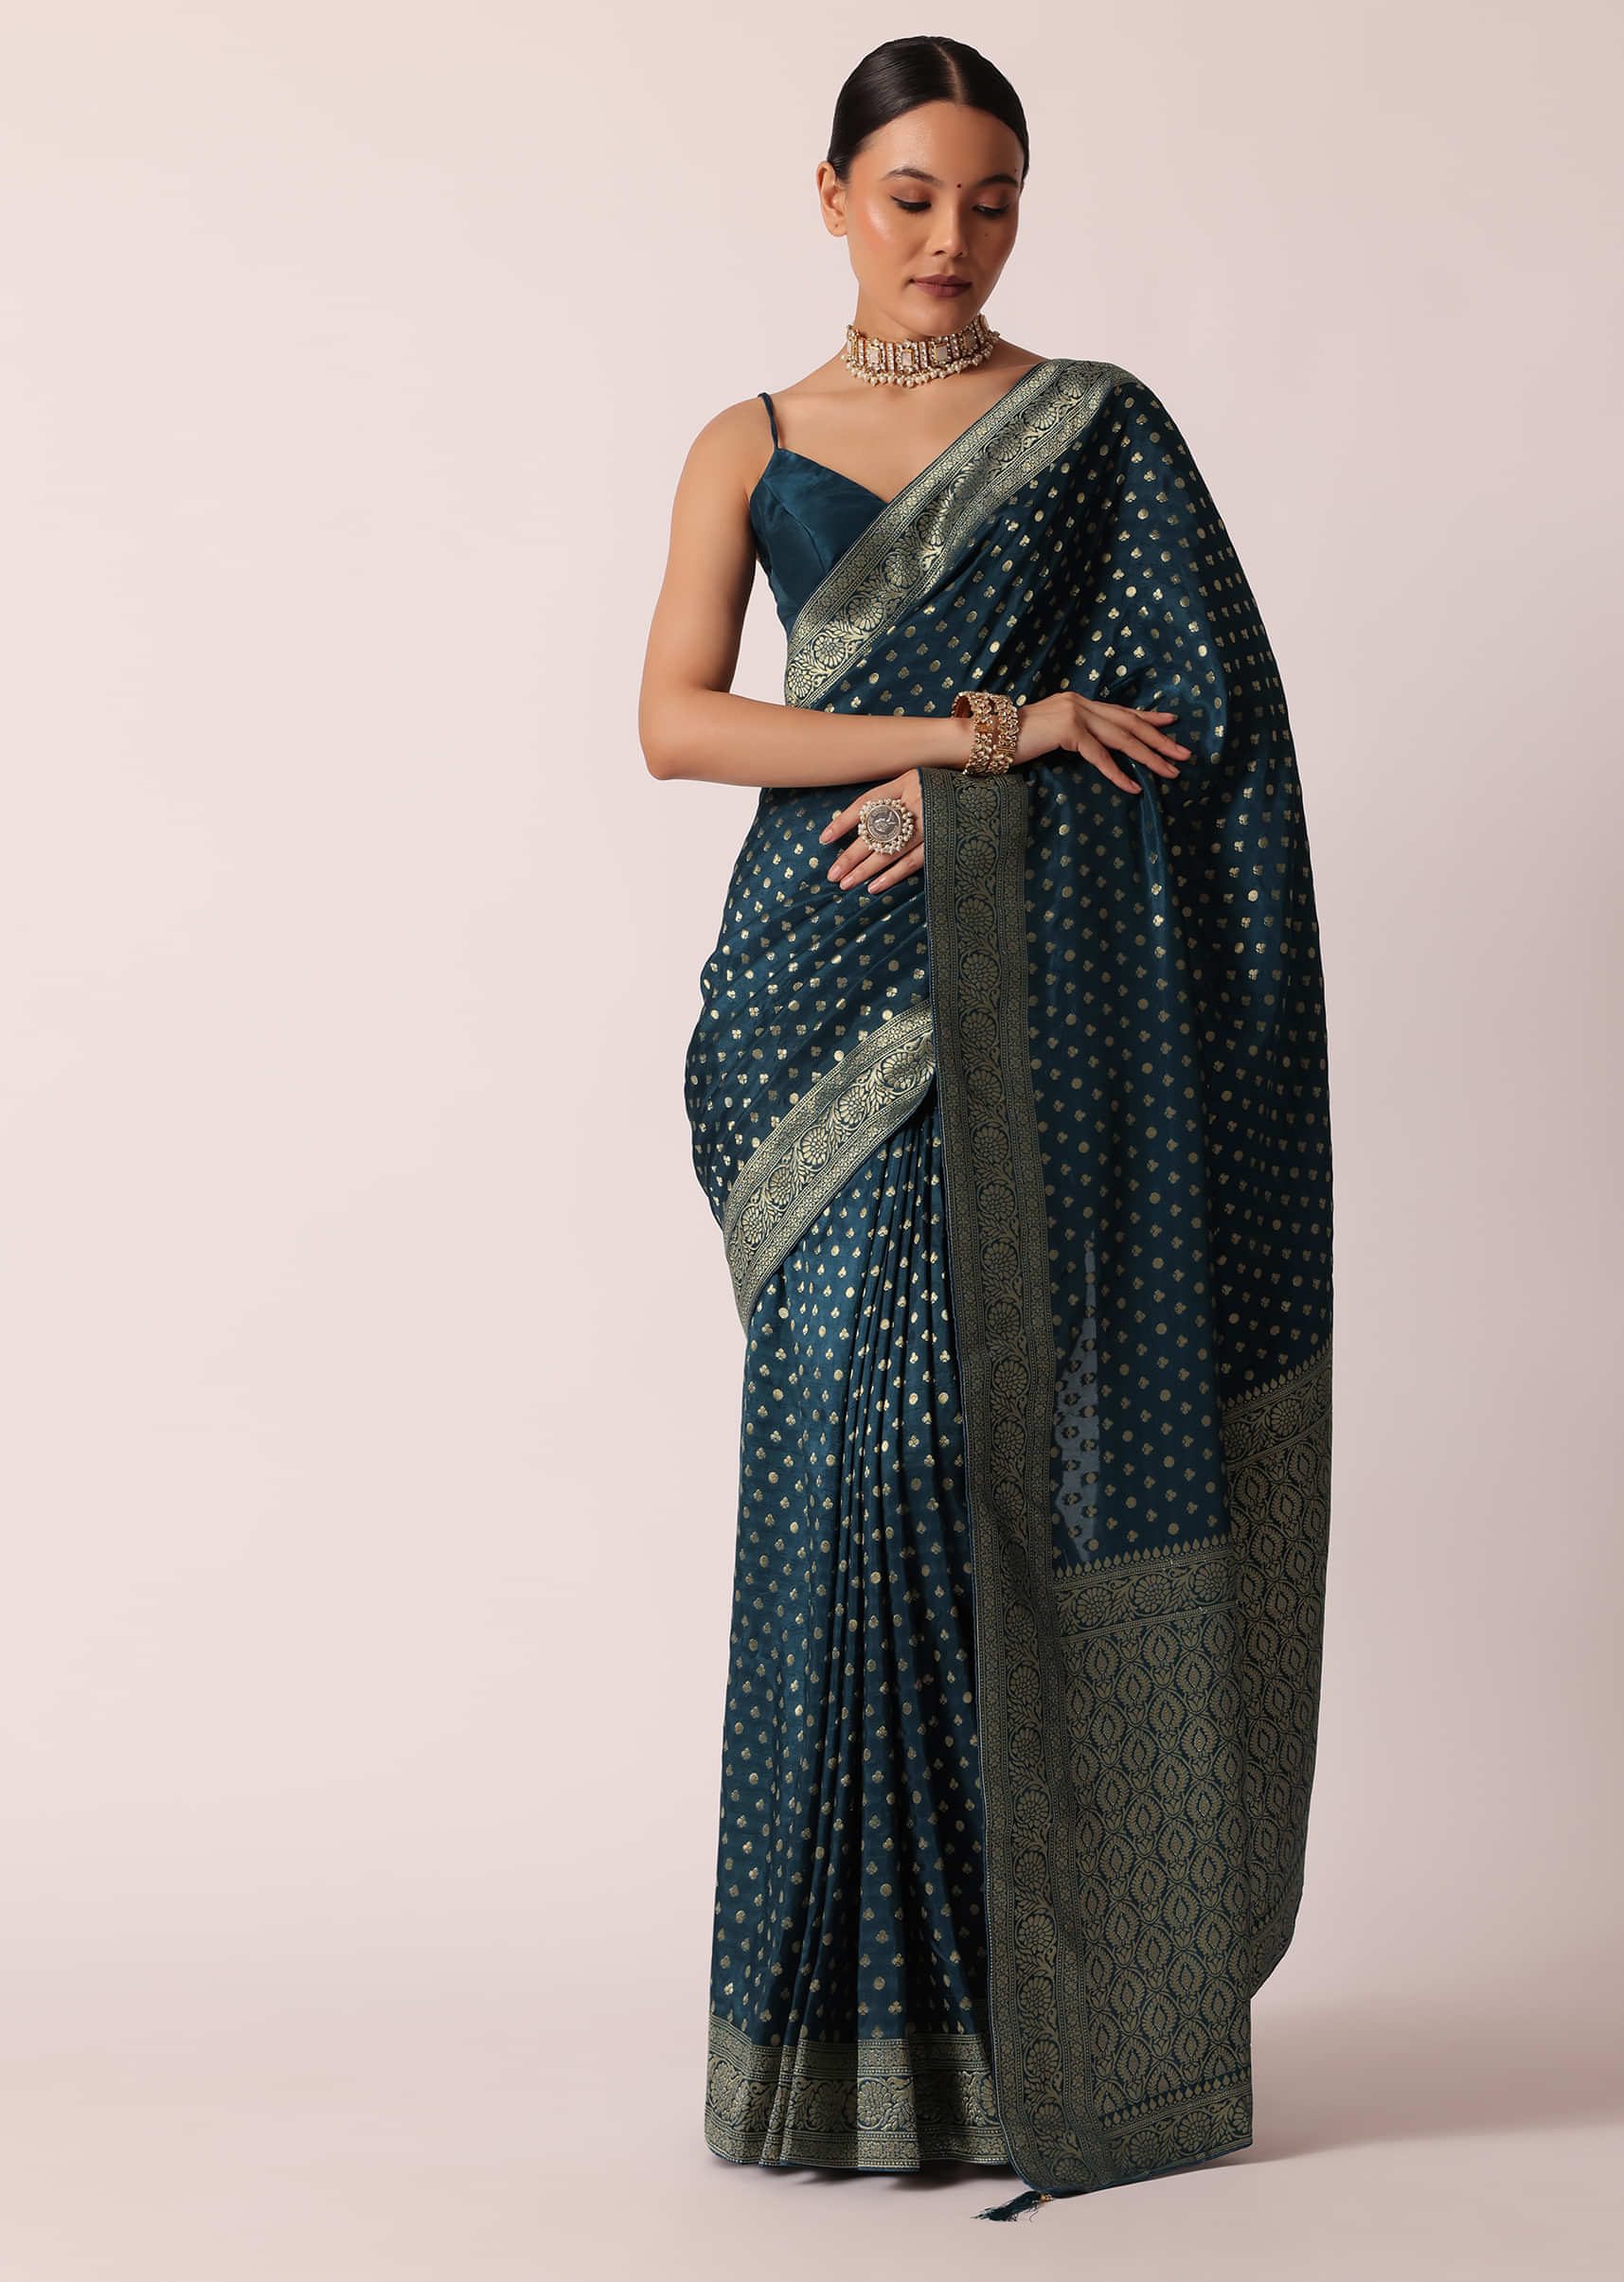 Indian Selections - Rust Art Silk Saree Sari Fabric India Golden Border